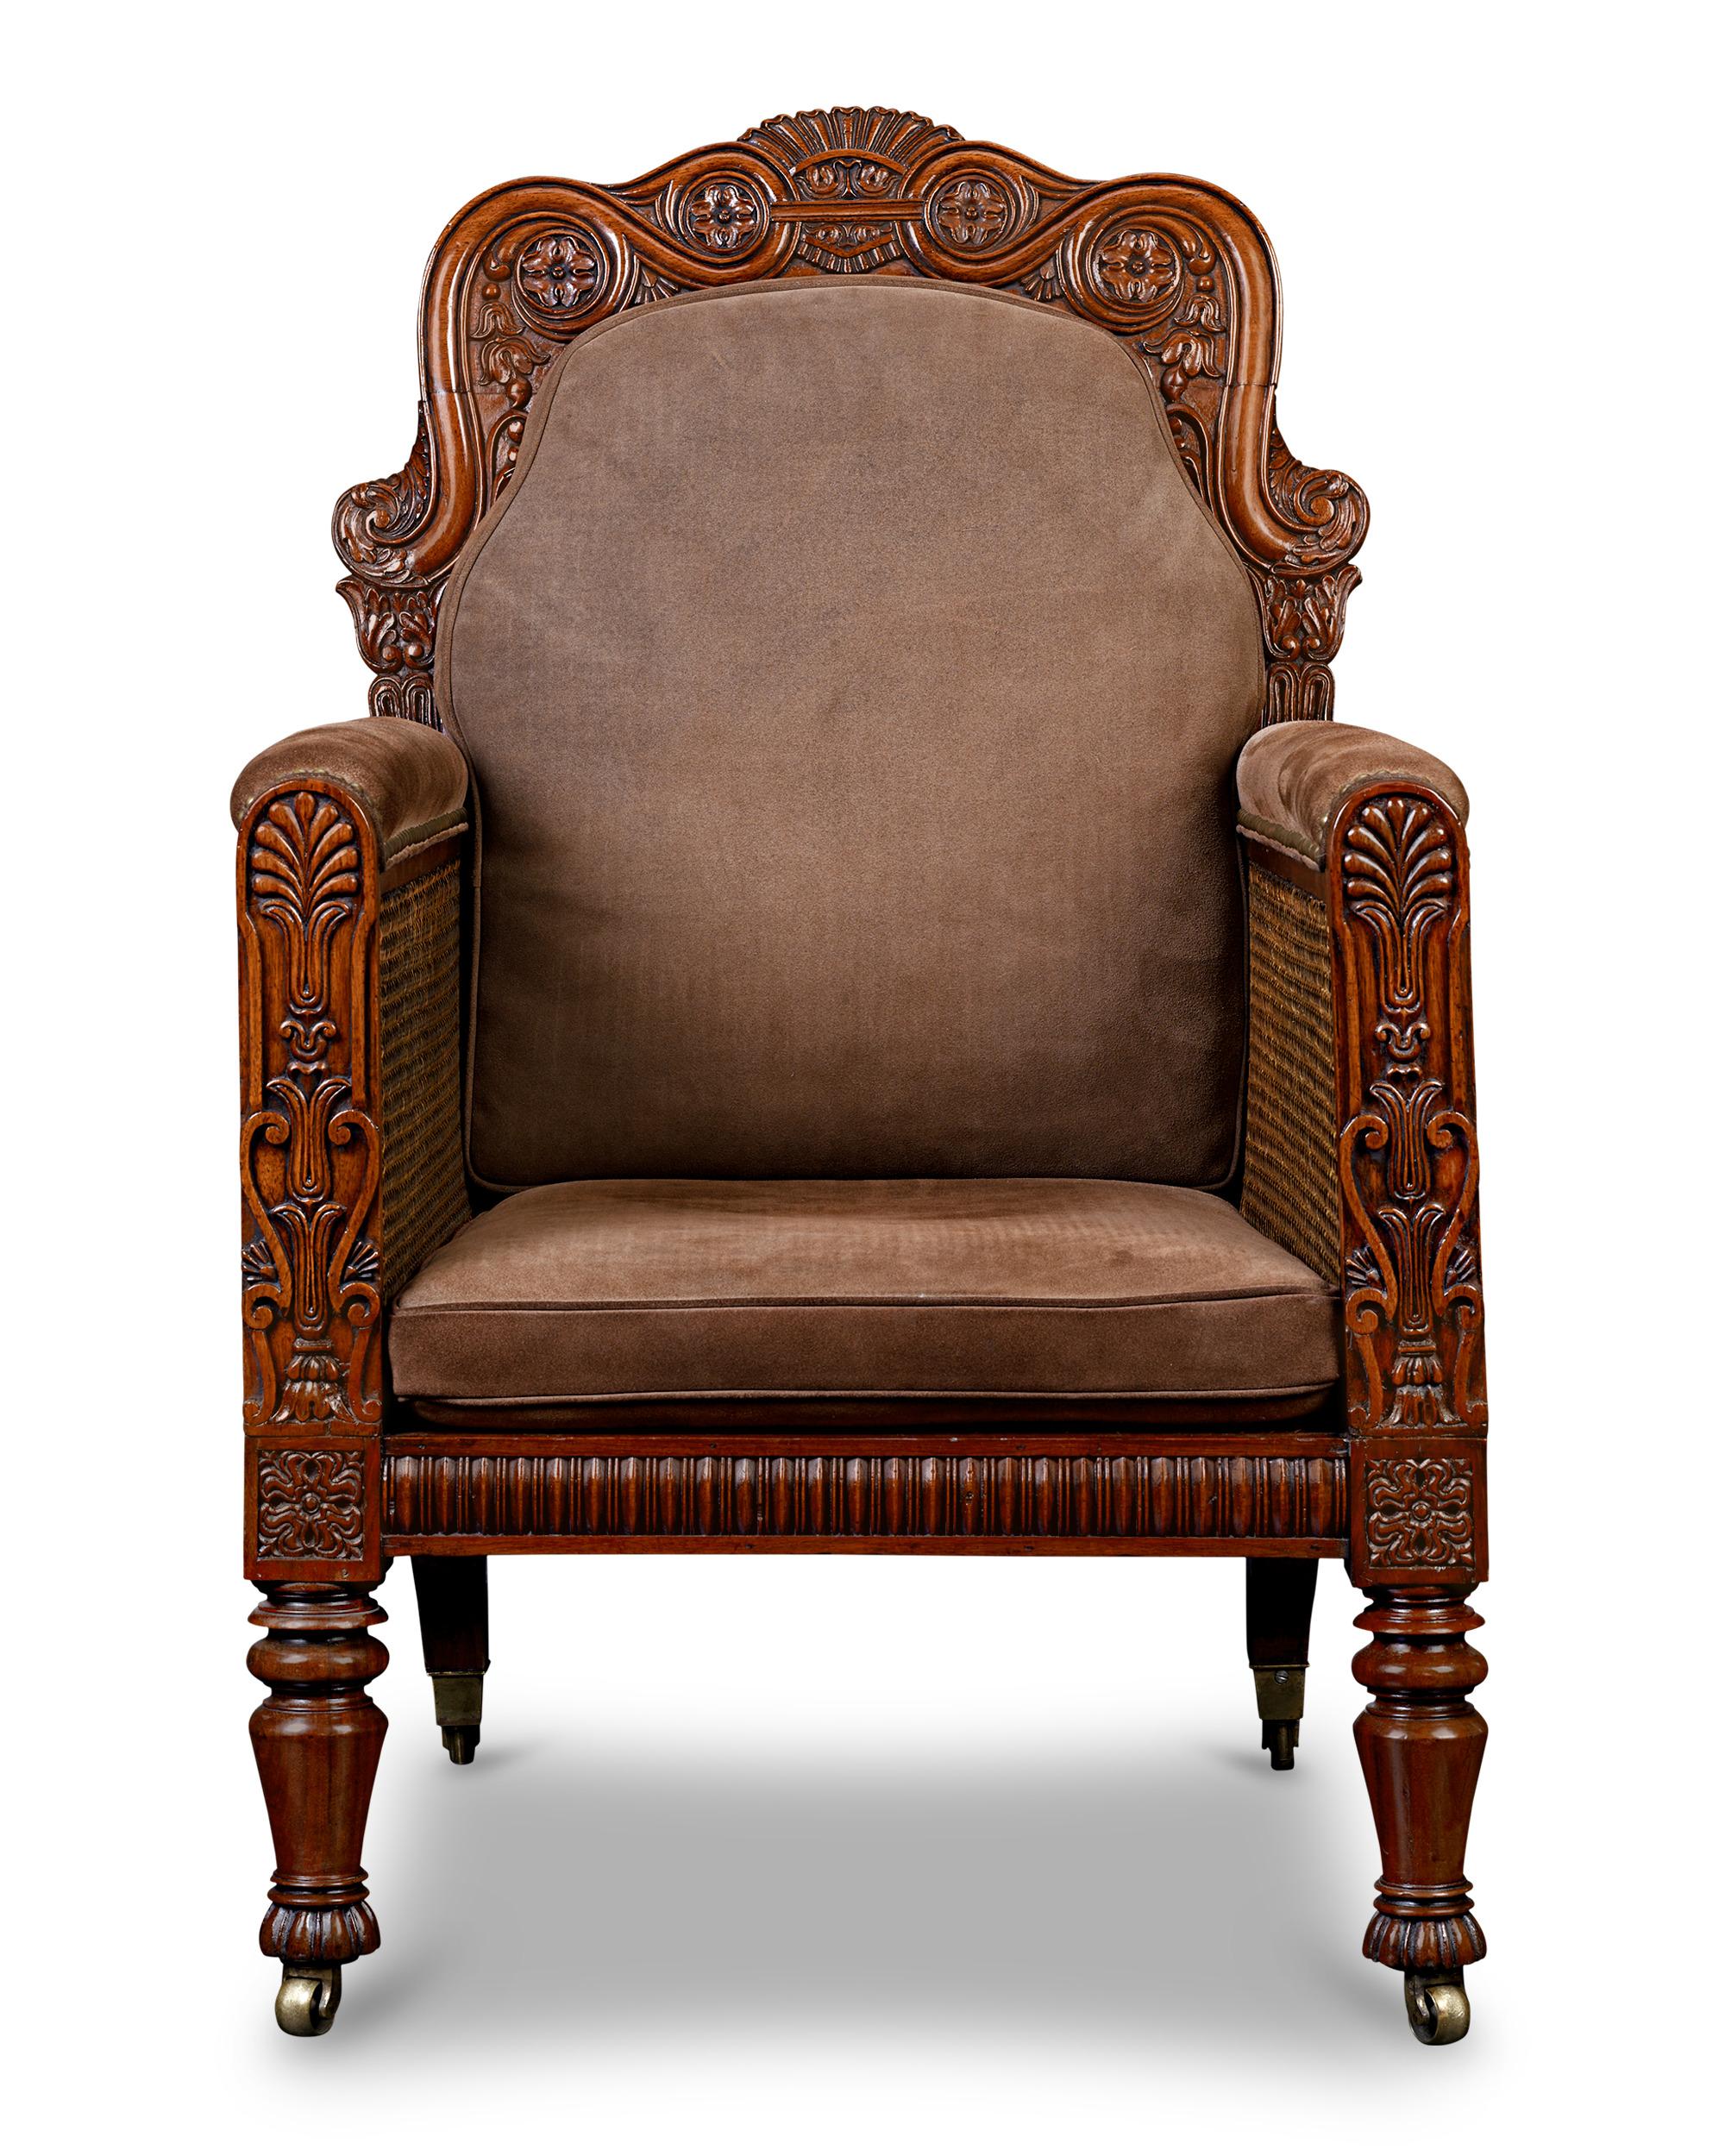 Eleganz und Raffinesse verströmt dieser herrschaftliche George-IV-Bergère-Sessel mit Caning-Details. Der Sessel ist aus Nussbaumholz gefertigt und weist geschnitzte Details und dekorative Elemente auf, die die neoklassizistischen und